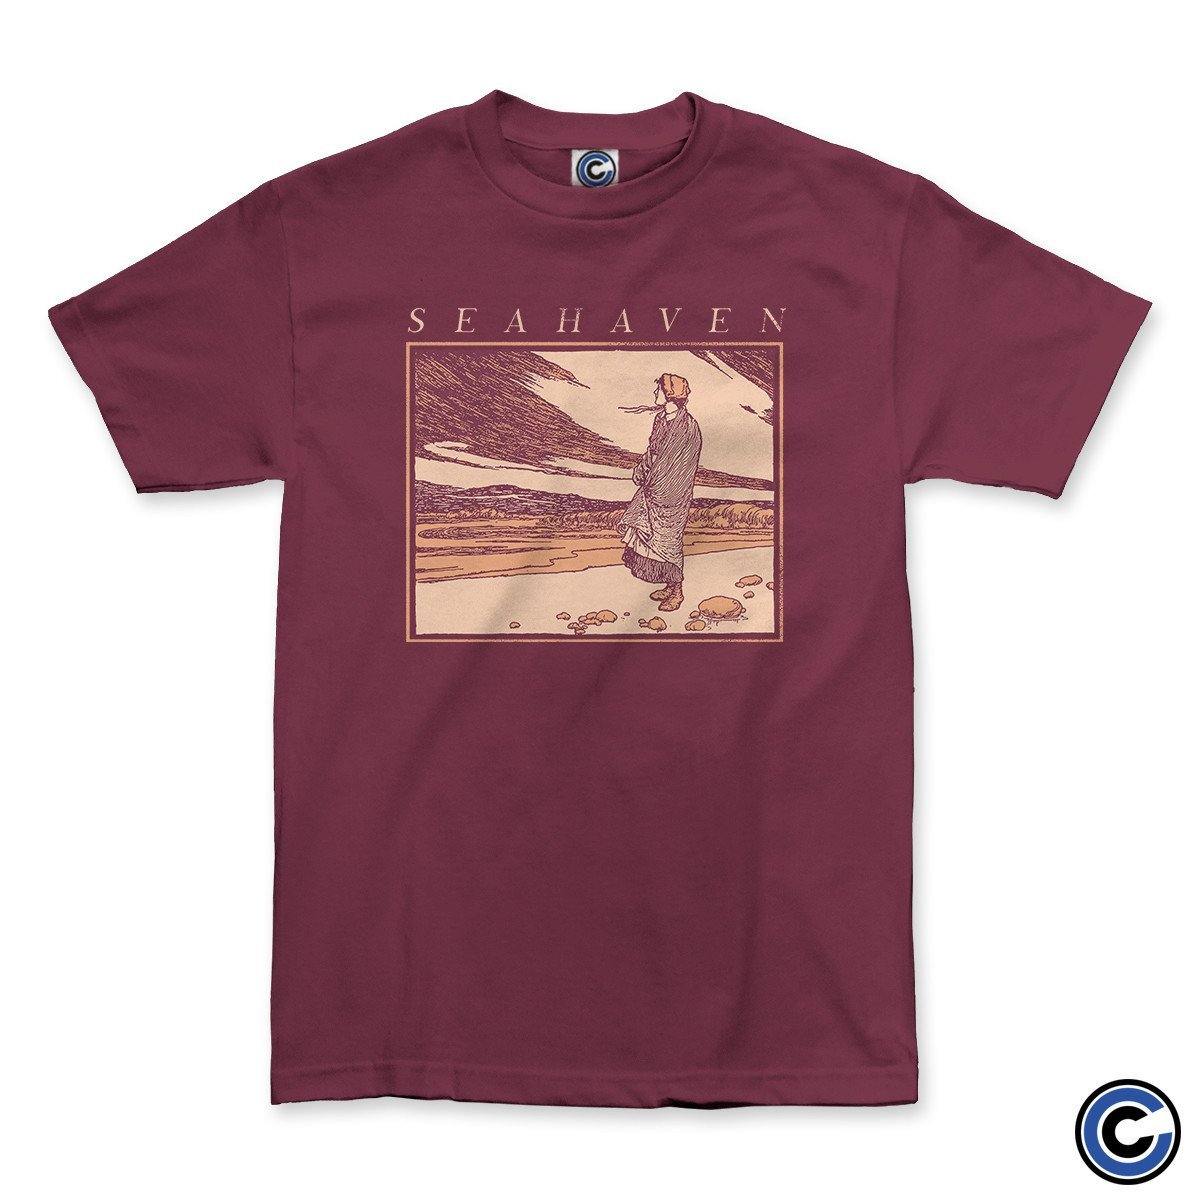 Buy – Seahaven "Wishing" Shirt – Band & Music Merch – Cold Cuts Merch